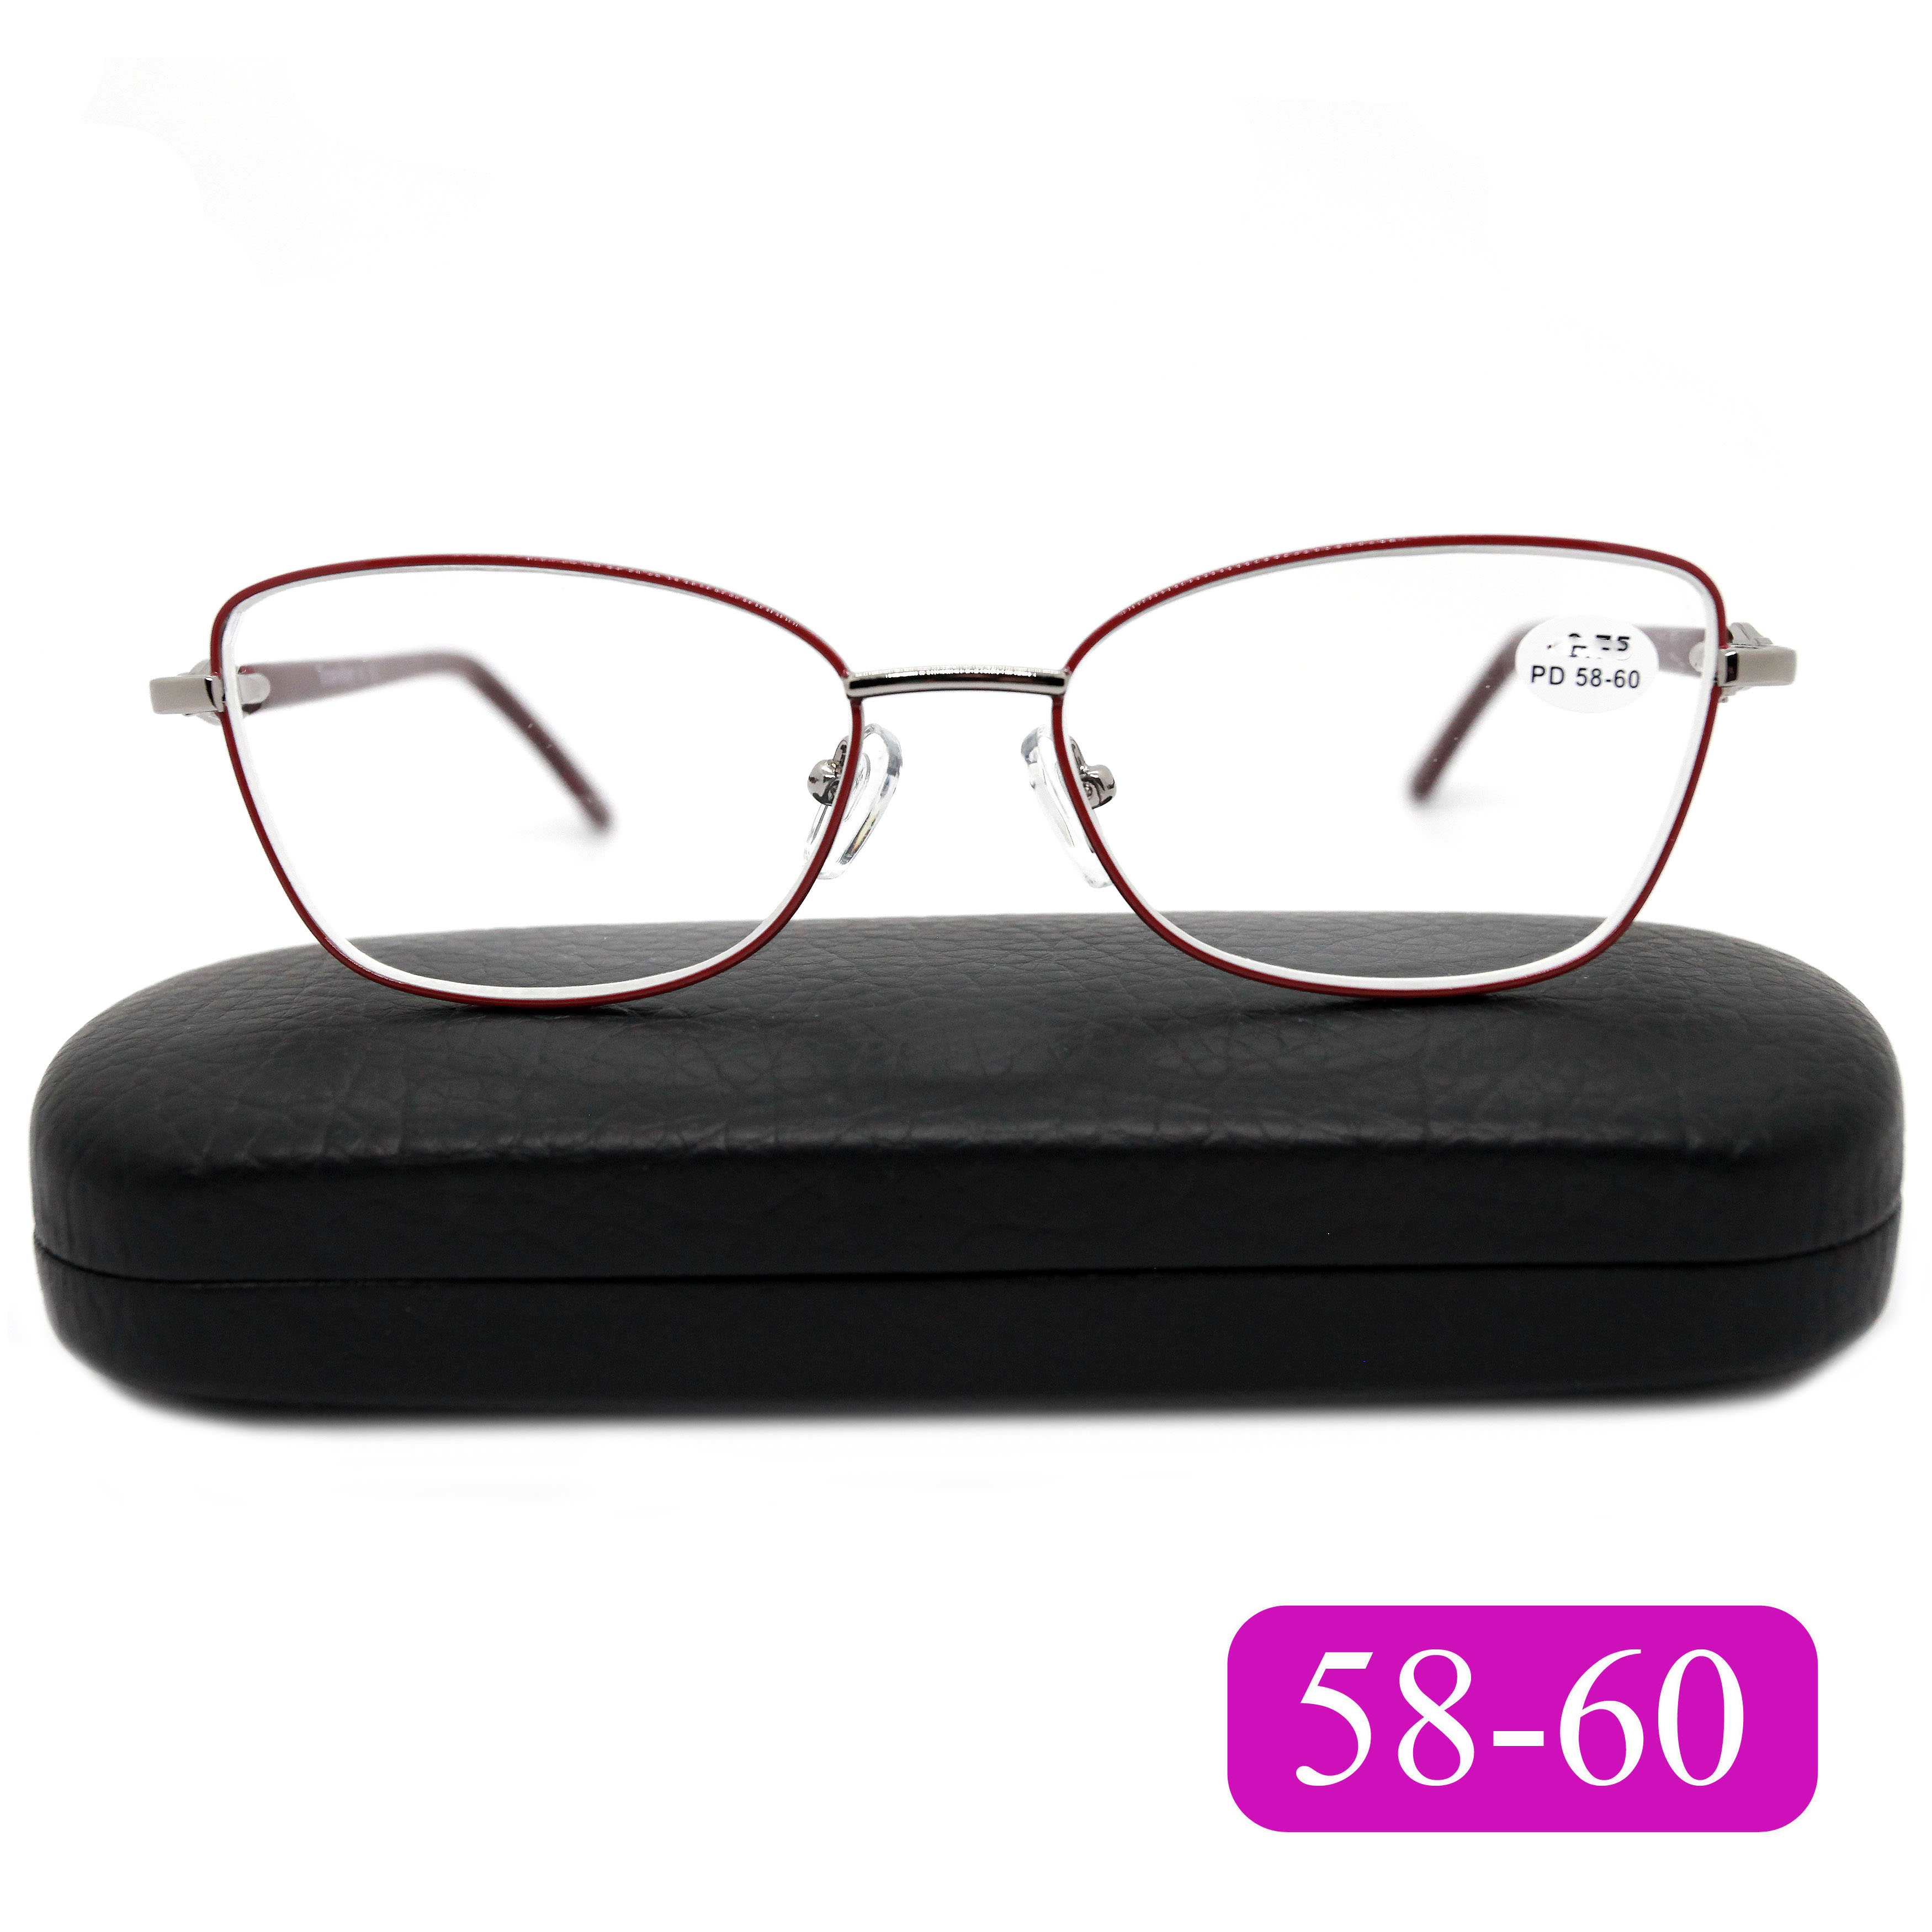 Готовые очки Traveler 8011 +5.00, c футляром, цвет бордовый, РЦ 58-60